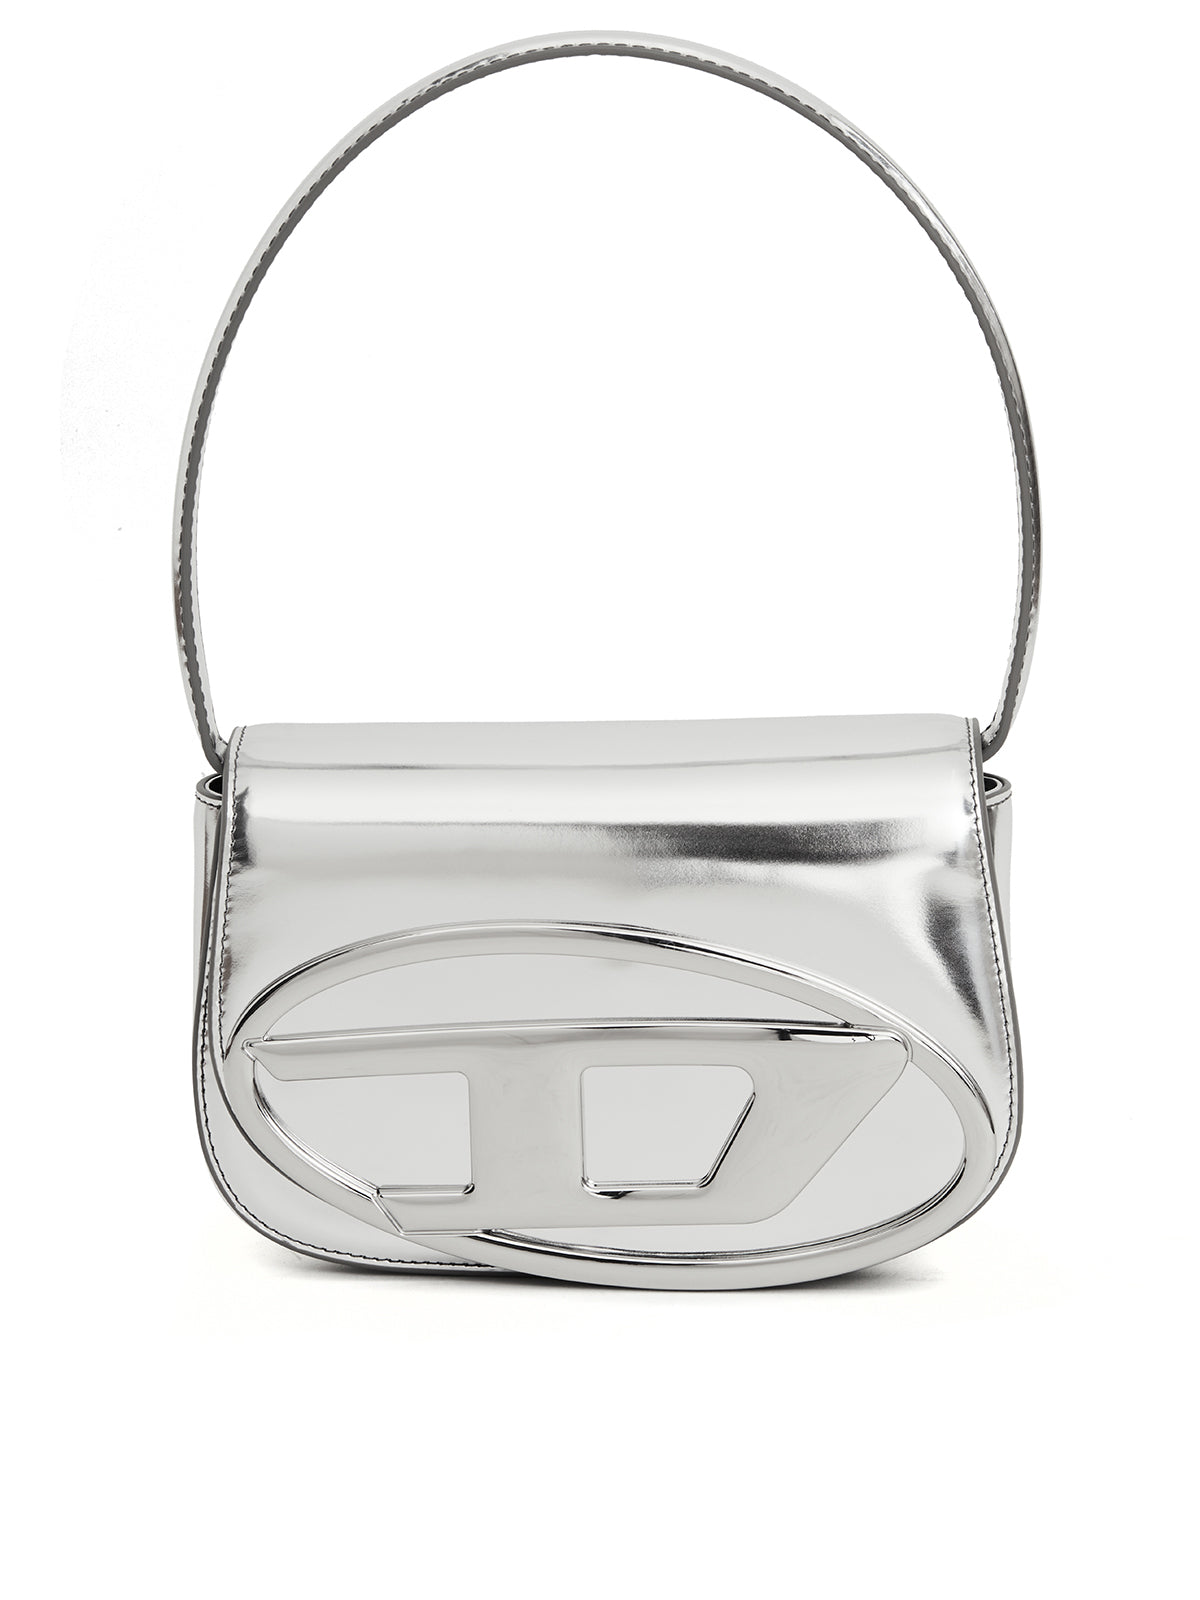 銀色レザー鏡肩掛けハンドバッグ (ブランド名抜き、外来語も避ける)